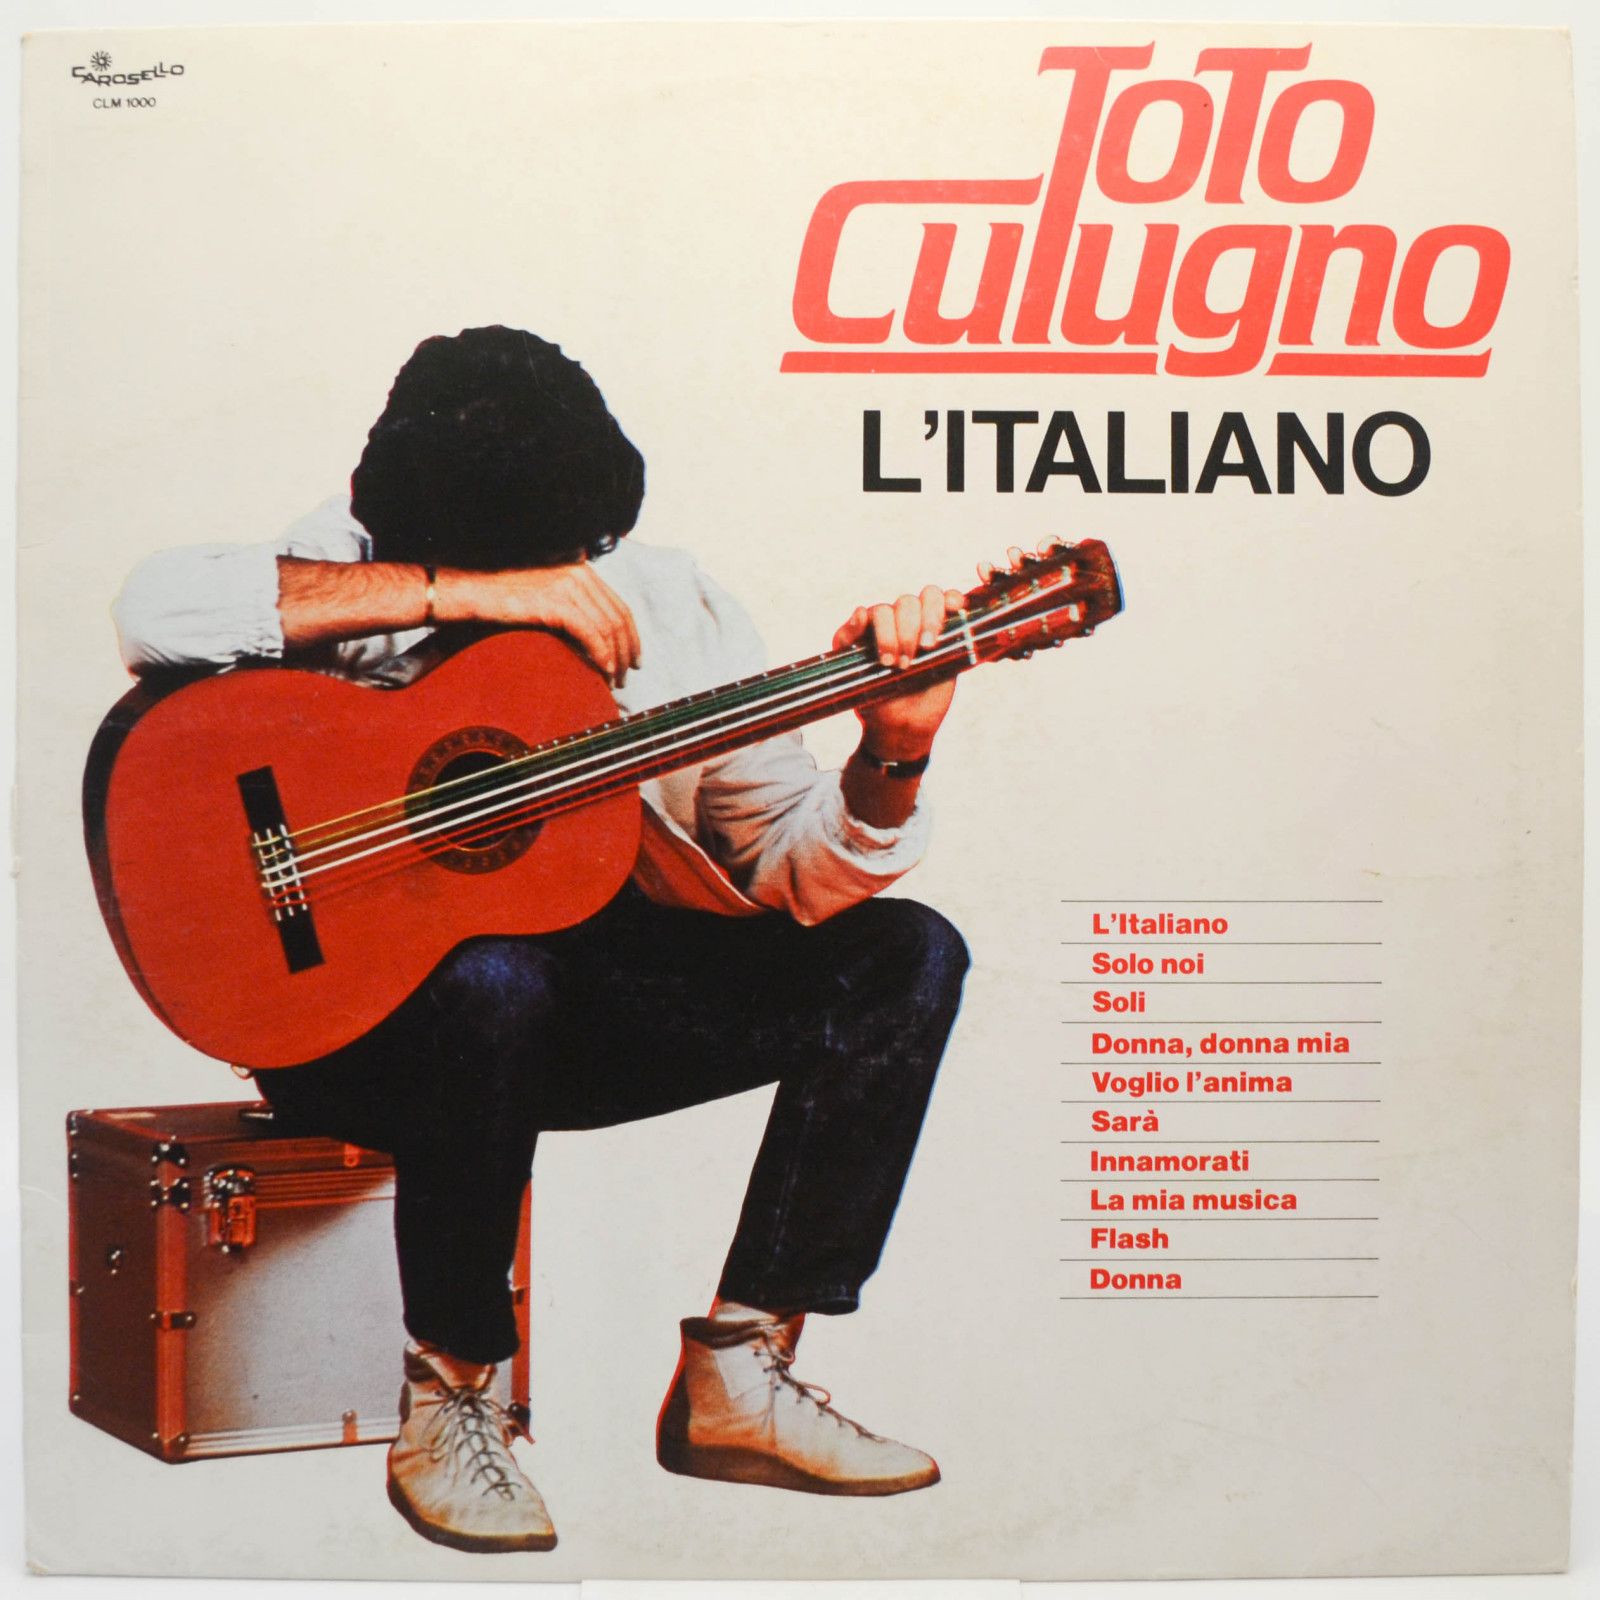 Toto Cutugno — L'Italiano (1-st, Italy), 1983